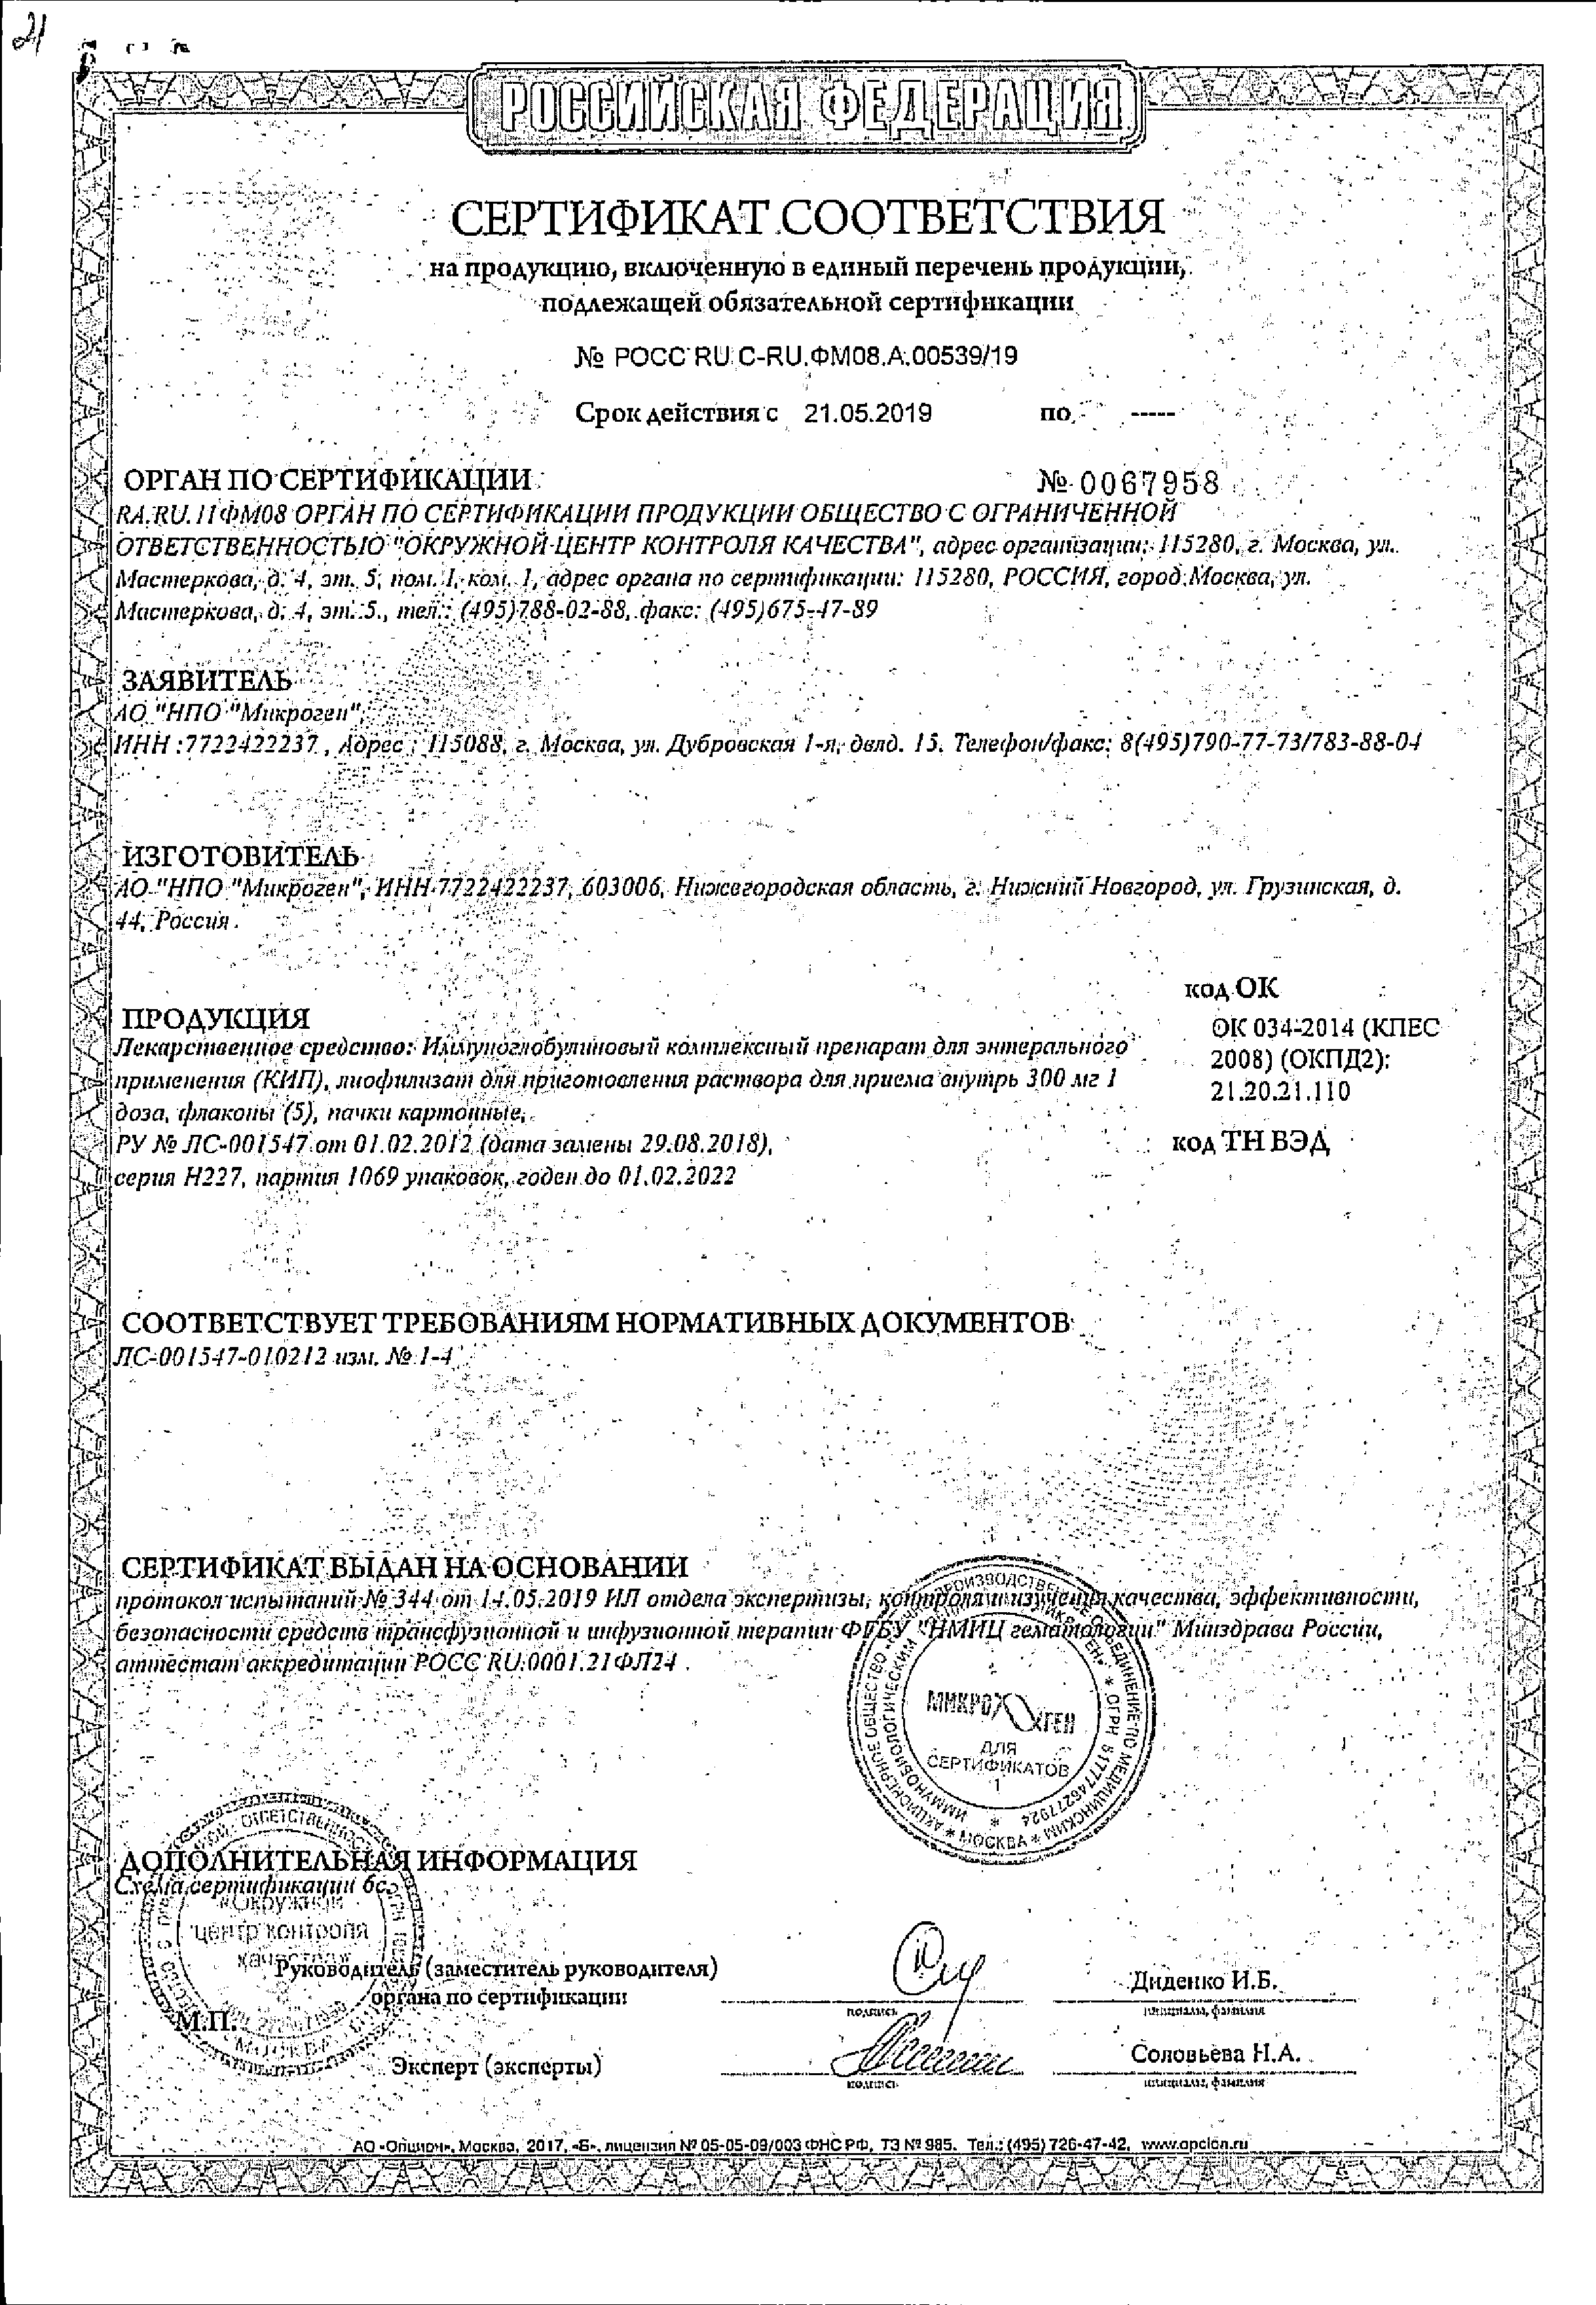 Иммуноглобулиновый комплексный препарат (КИП) сертификат